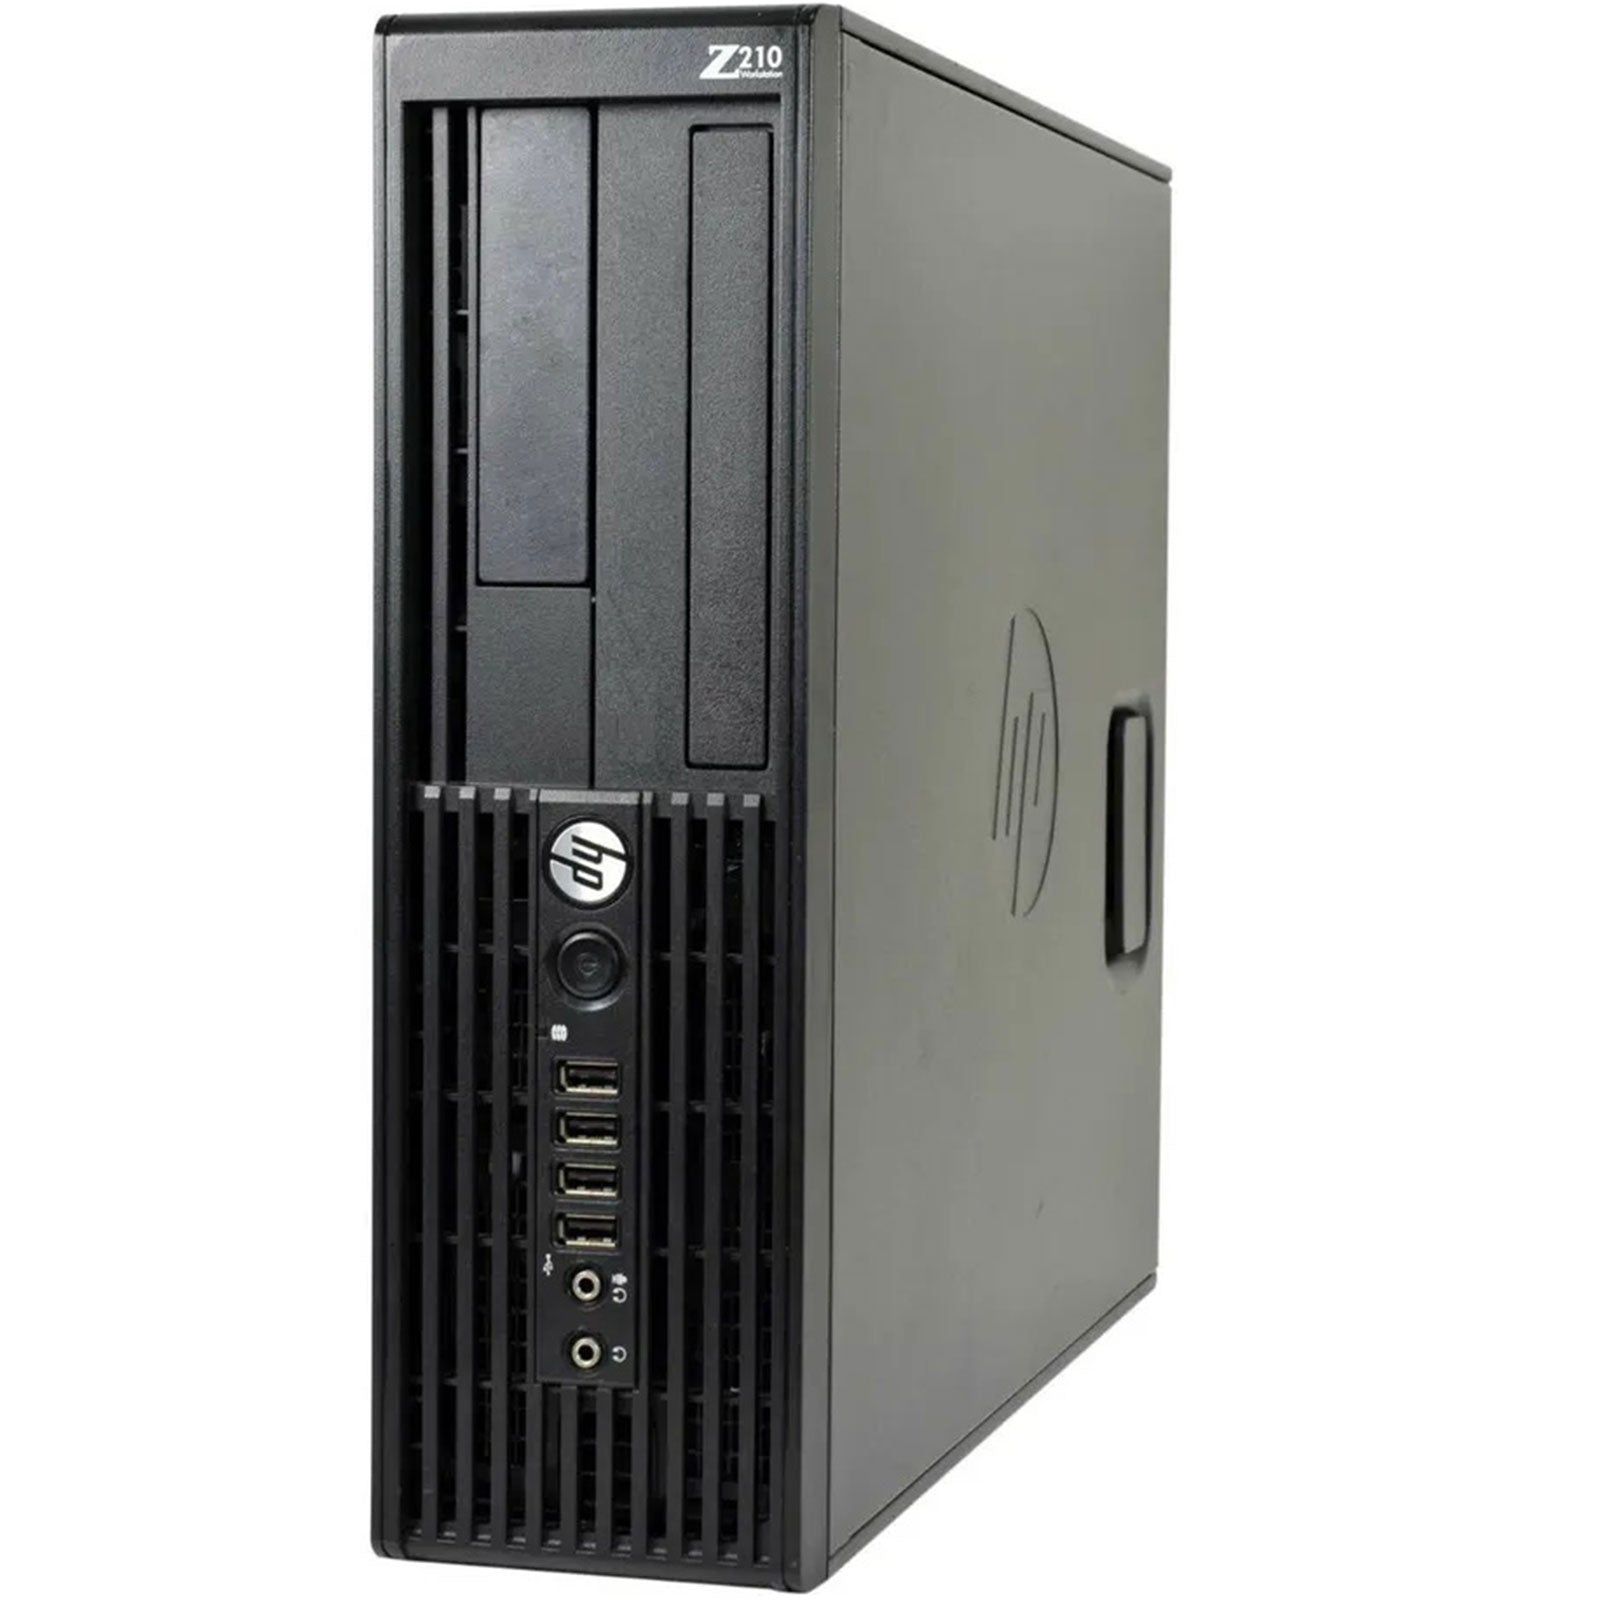 PC Desktop Ricondizionato - Grado A - HP Workstation Z210 SFF Computer i5-2400 Ram 8Gb SSD 240Gb Freedos (Ricondizionato Grado A) - Disponibile in 2-4 giorni lavorativi